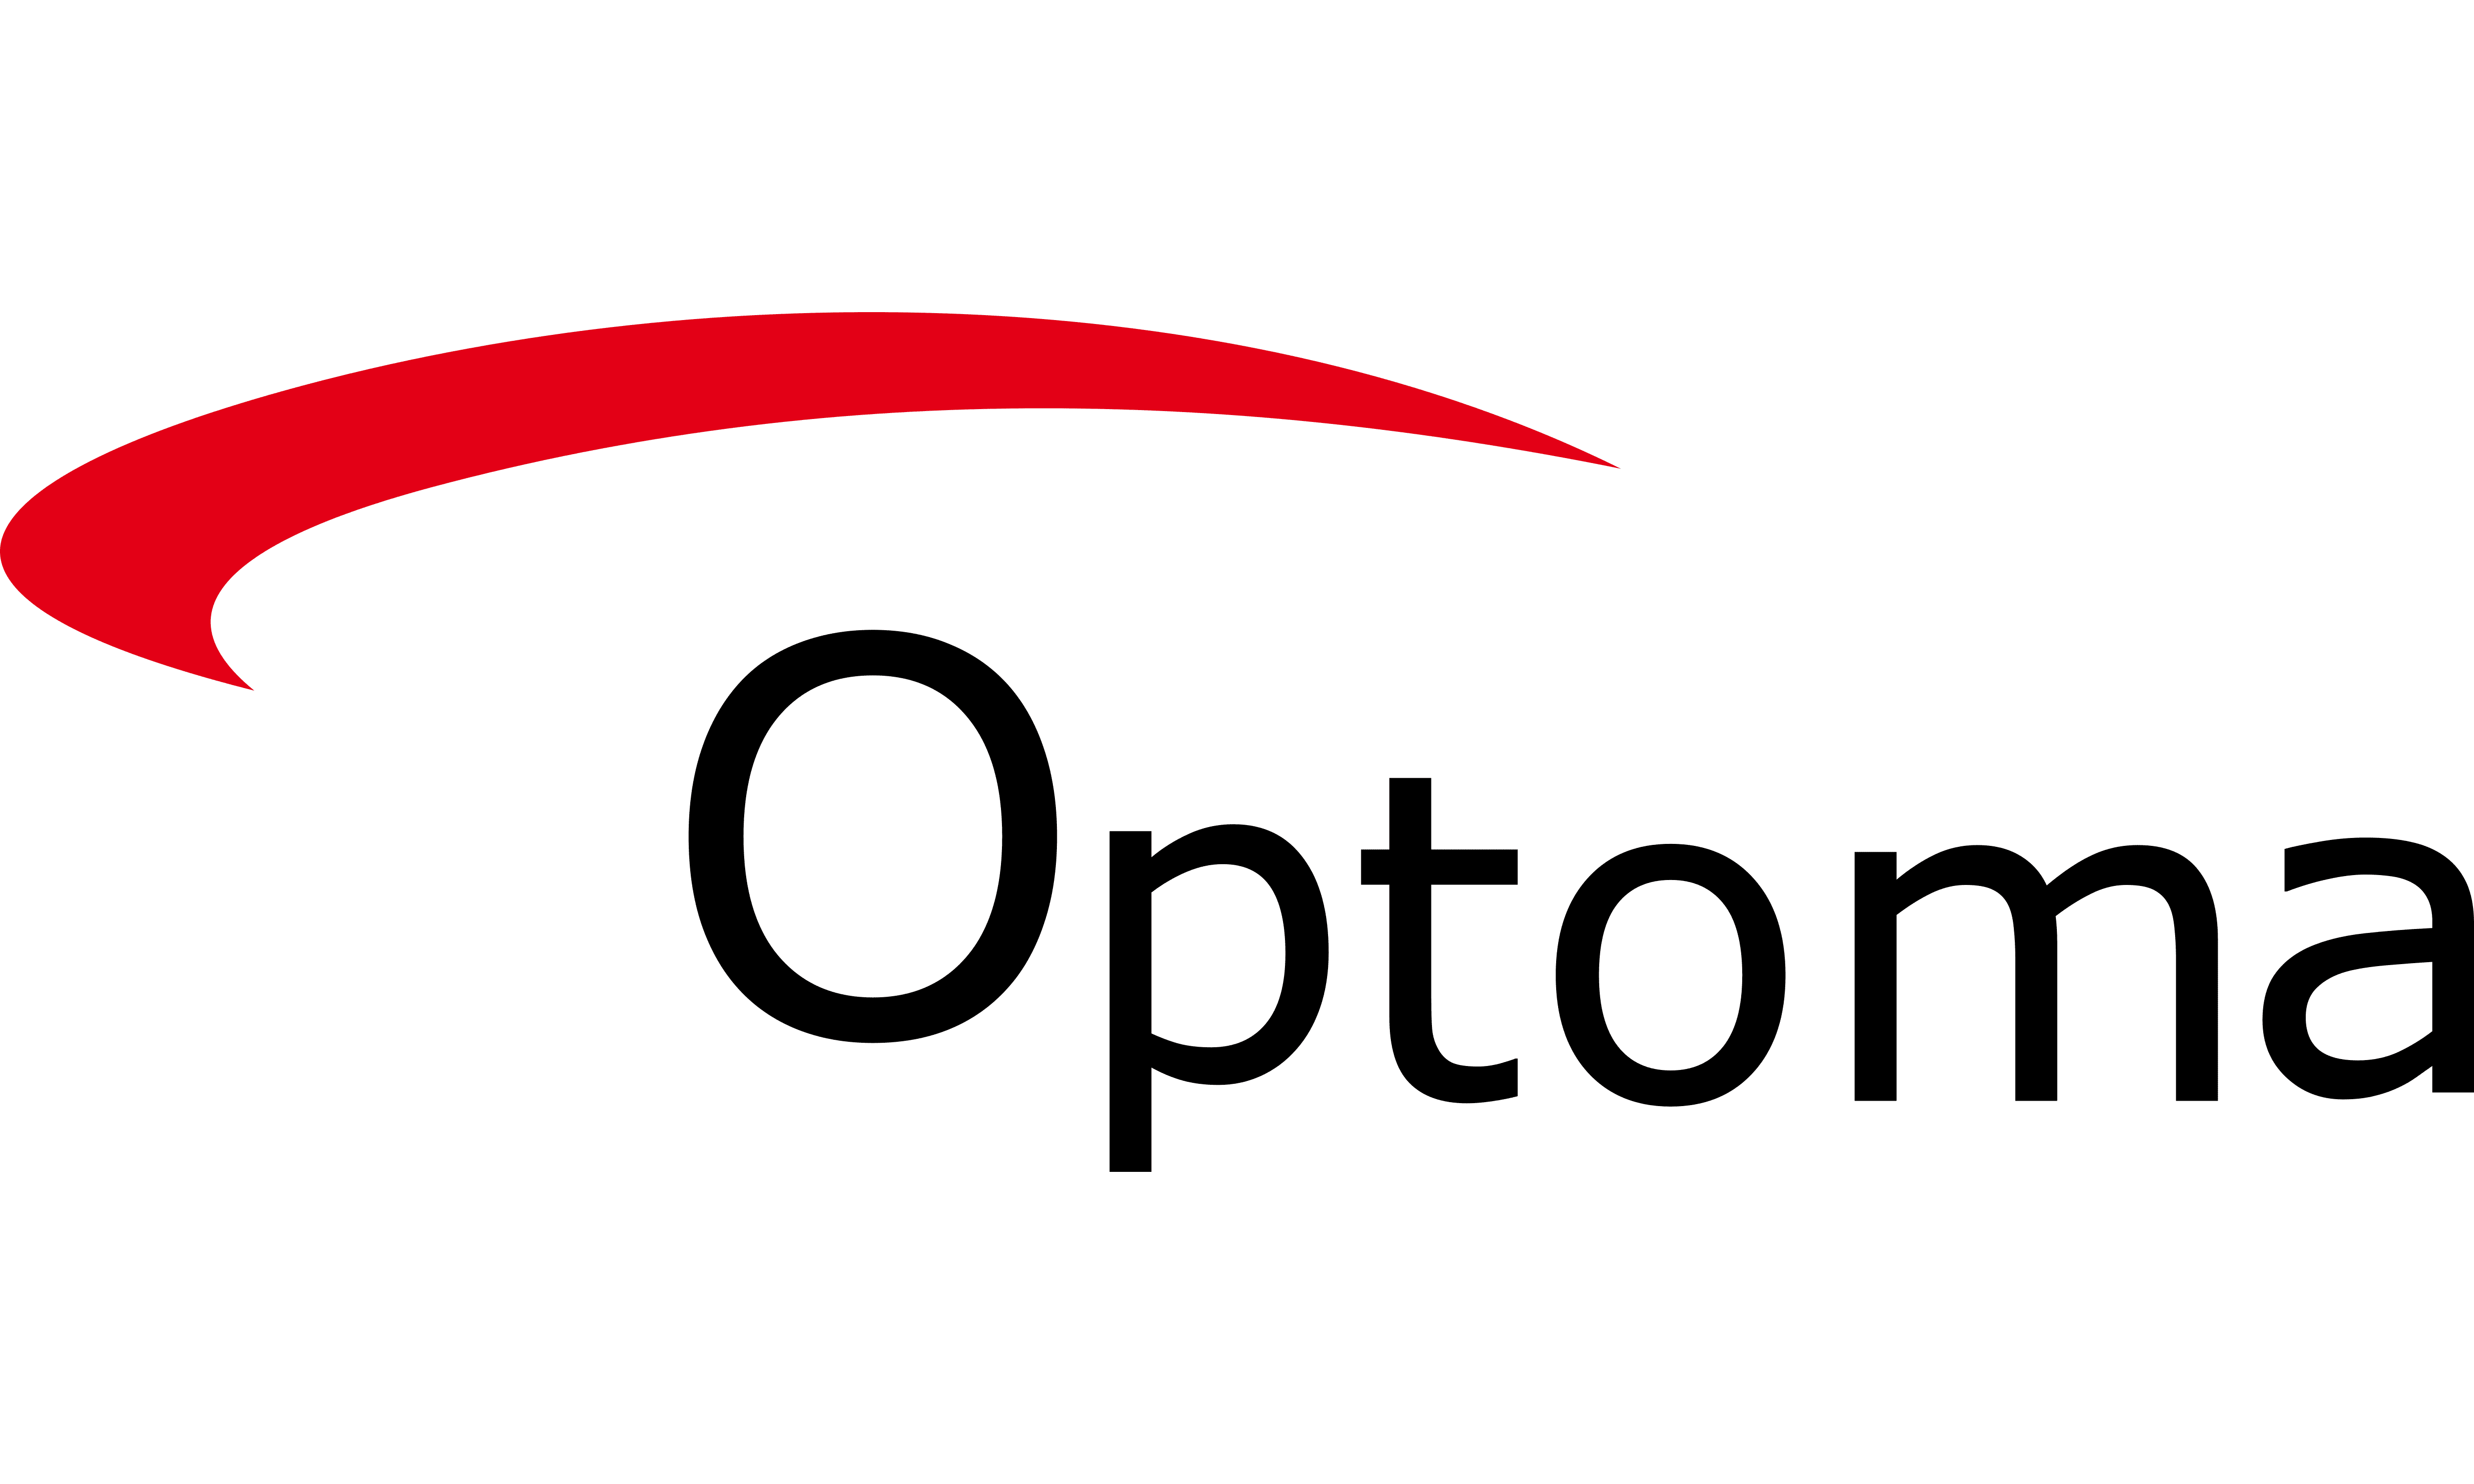 Optoma Technology